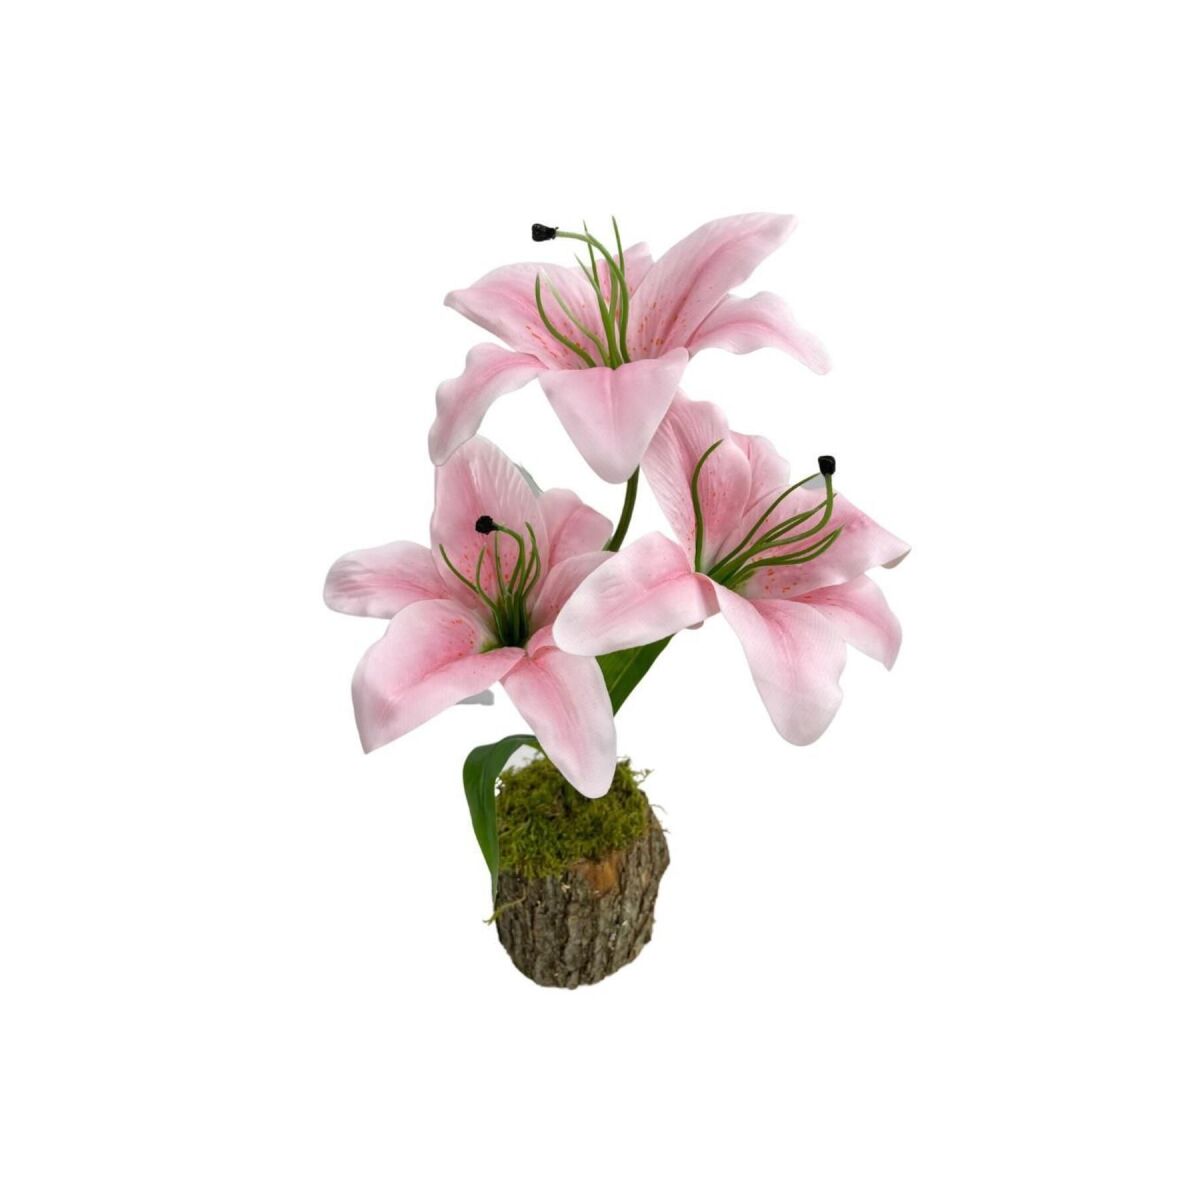 Yapay Çiçek Kütük Saksıda Islak Lilyum Pembe Renk 3 Çiçekli Gerçeksi Doku